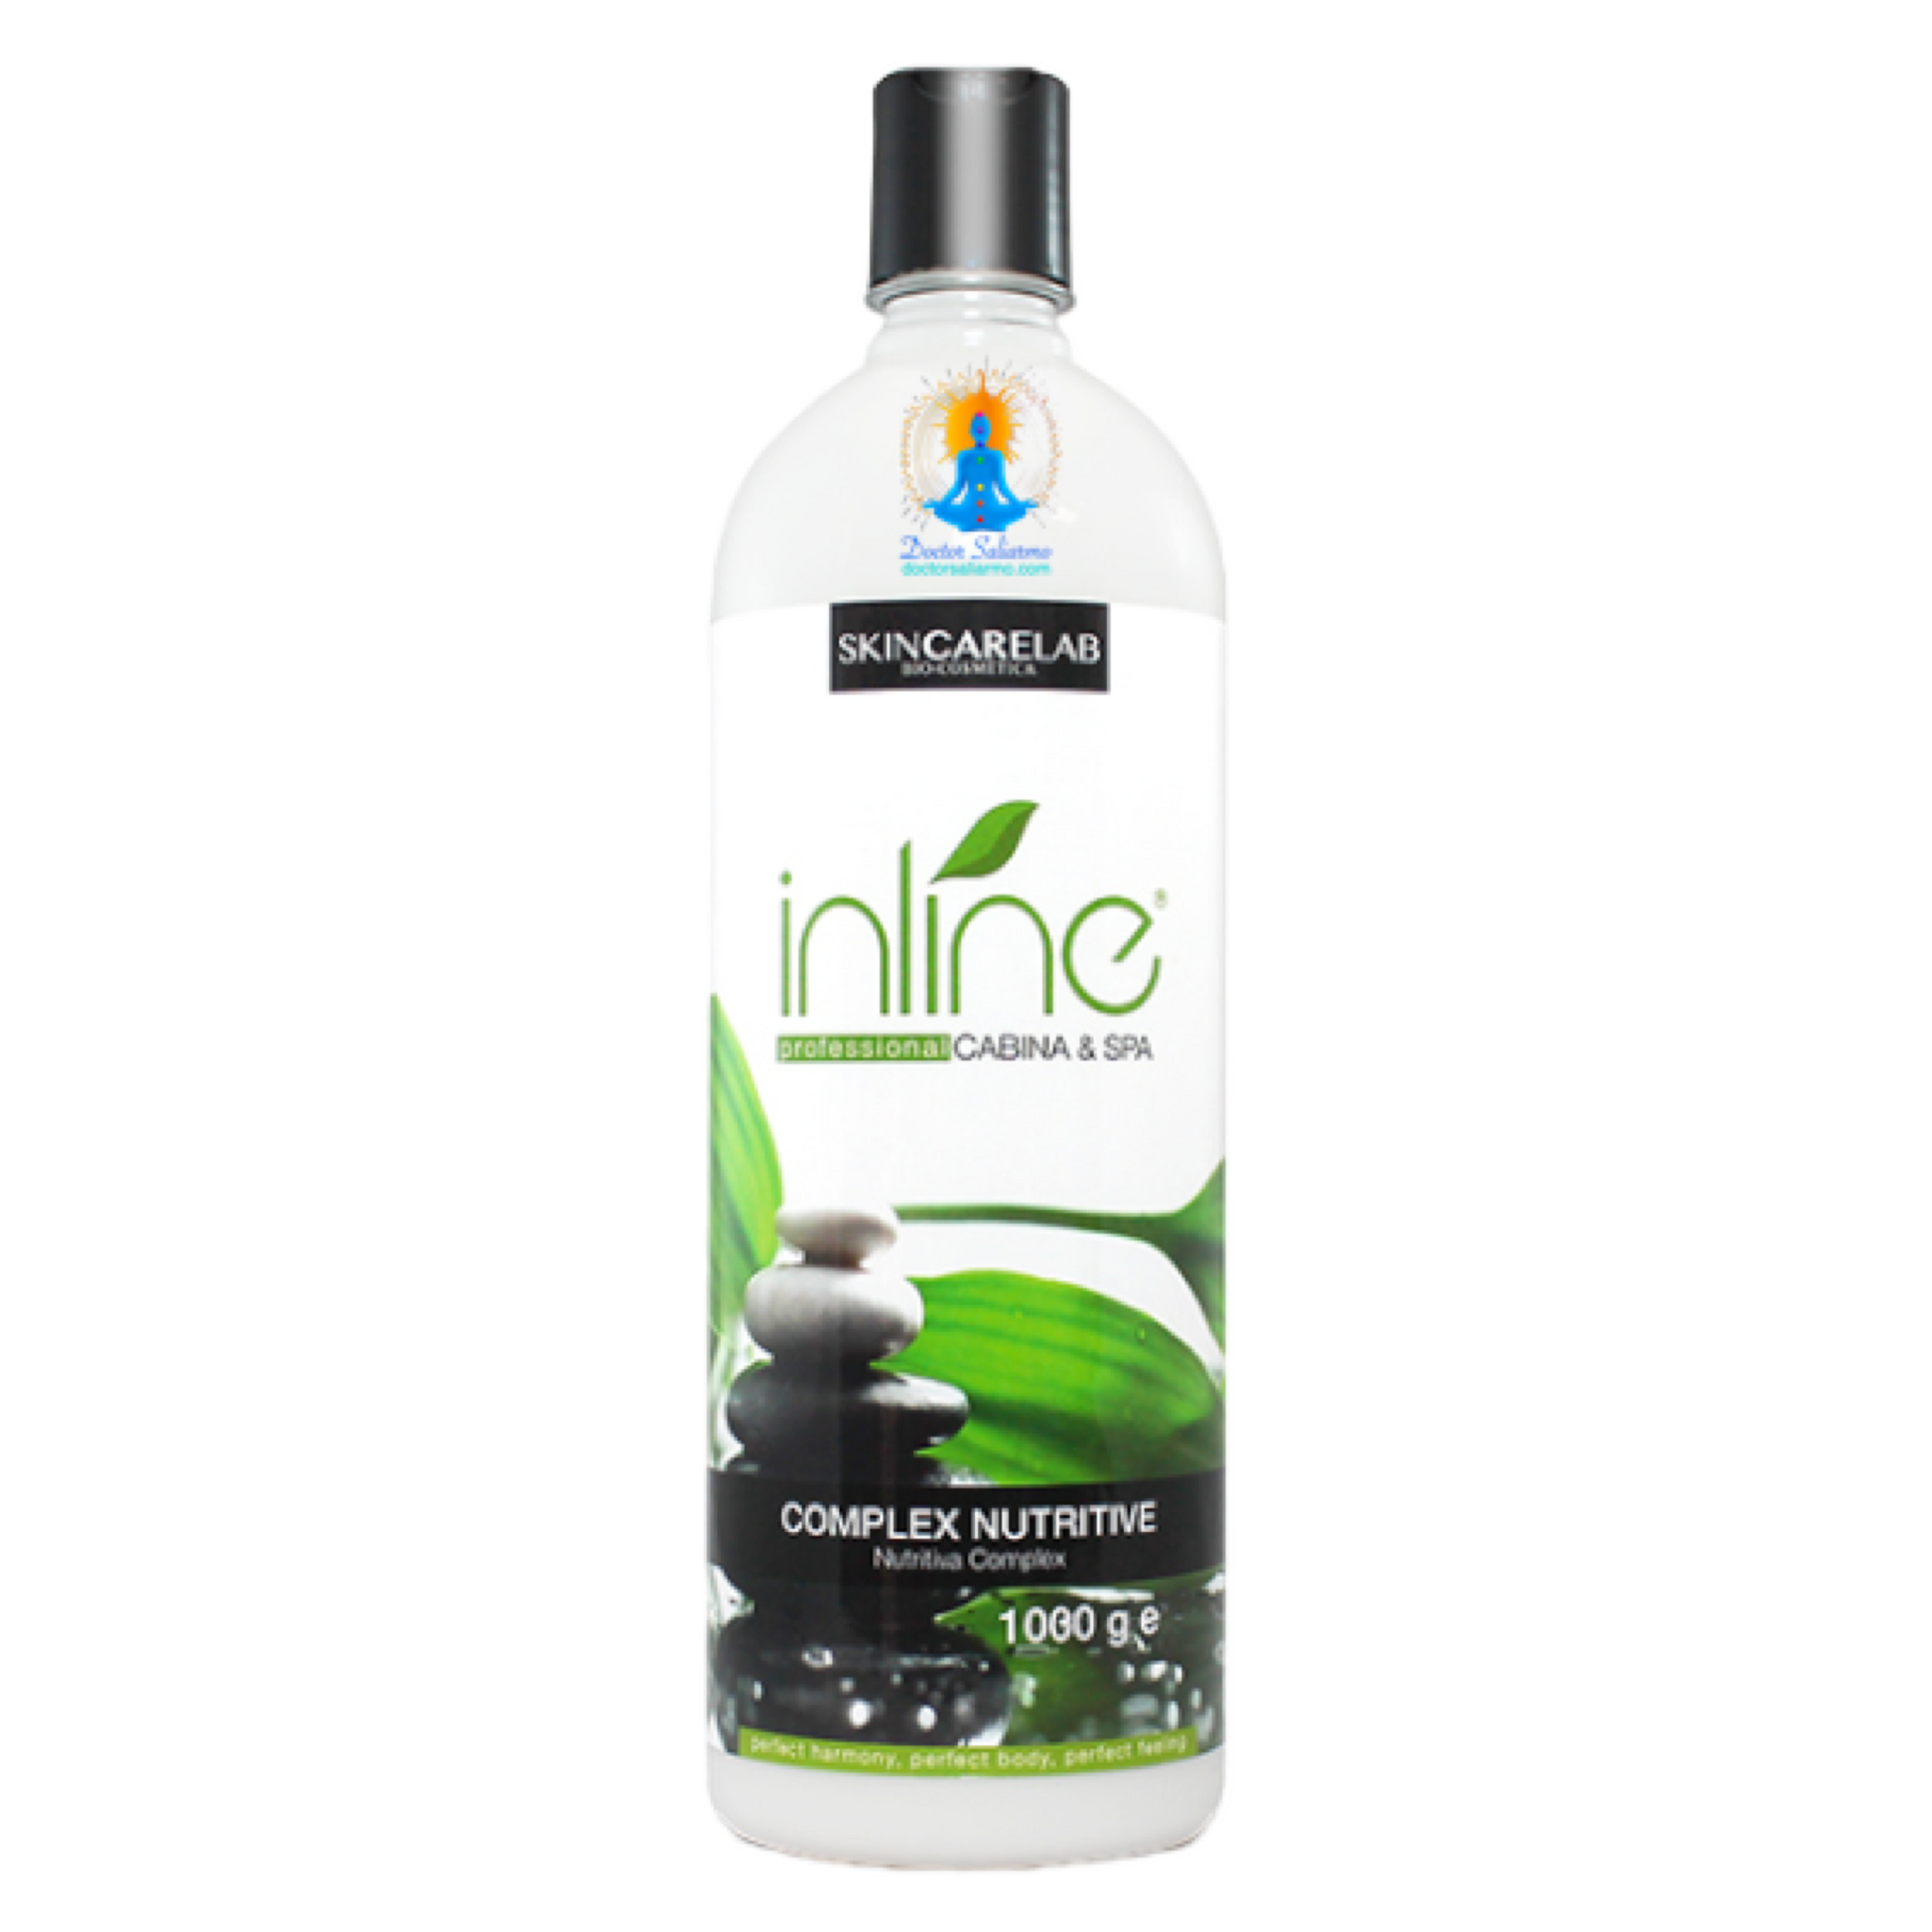 Crema nutritiva Inline humecta y mejora la elasticidad de la superficie cutánea gracias a que contiene vitaminas y proteínas.